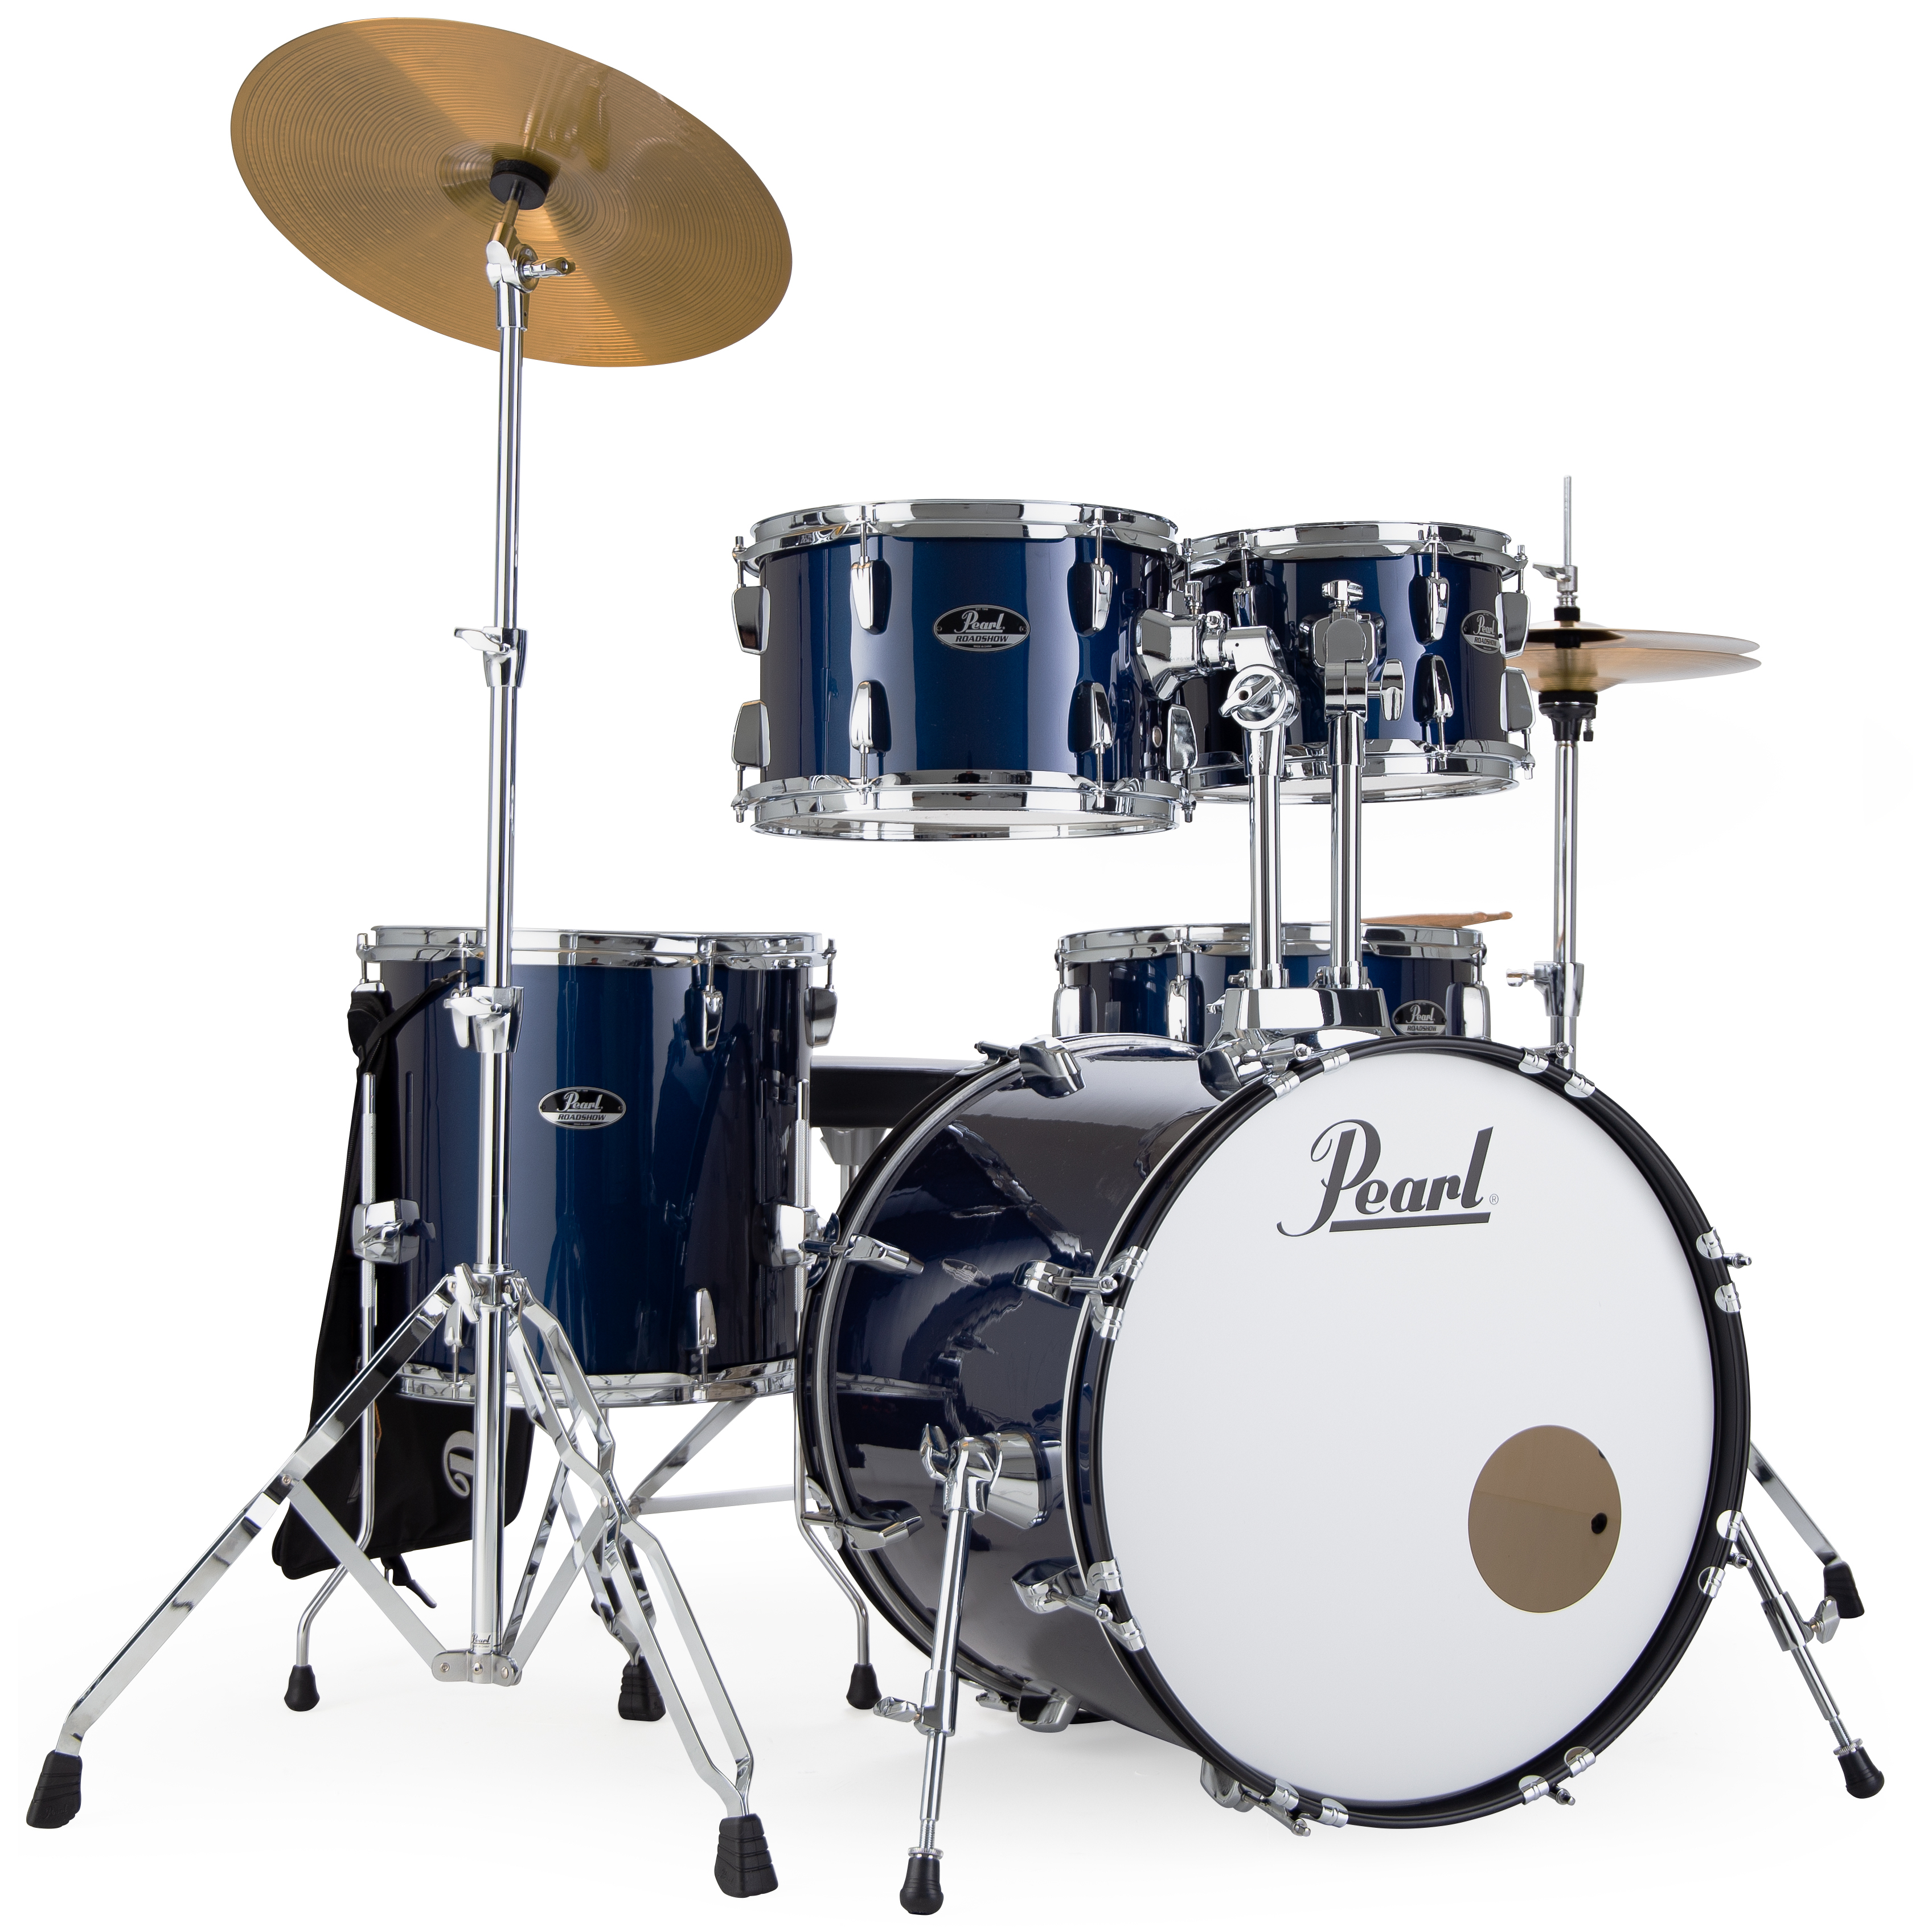 Акустические ударные установки Pearl RS525SC/C743 10 дюймовый барабан практика pad с барабанные палочки сумка для обучения